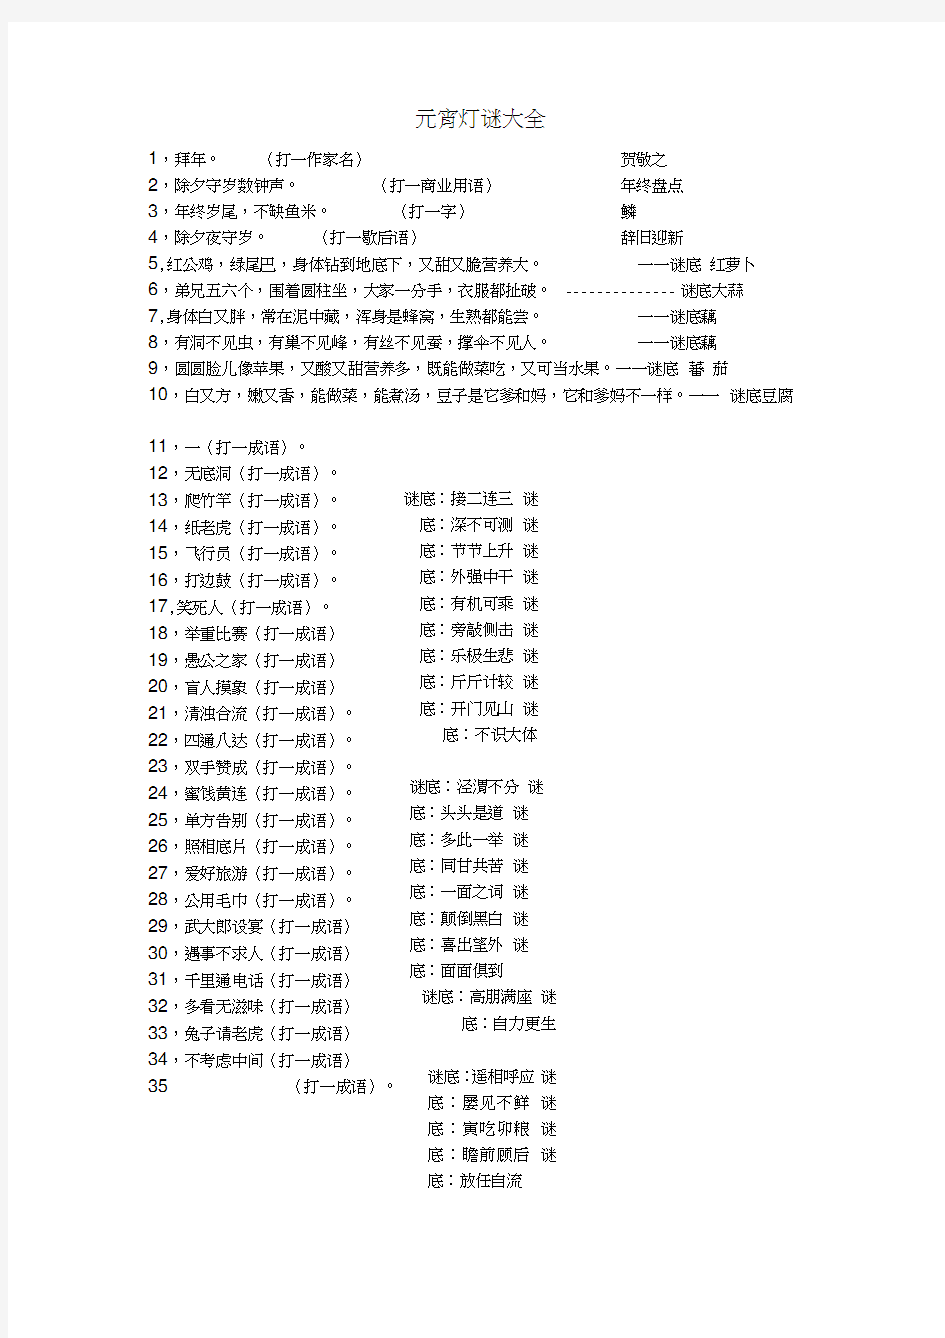 (完整)2014年元宵灯谜大全及答案(110个)(2),推荐文档